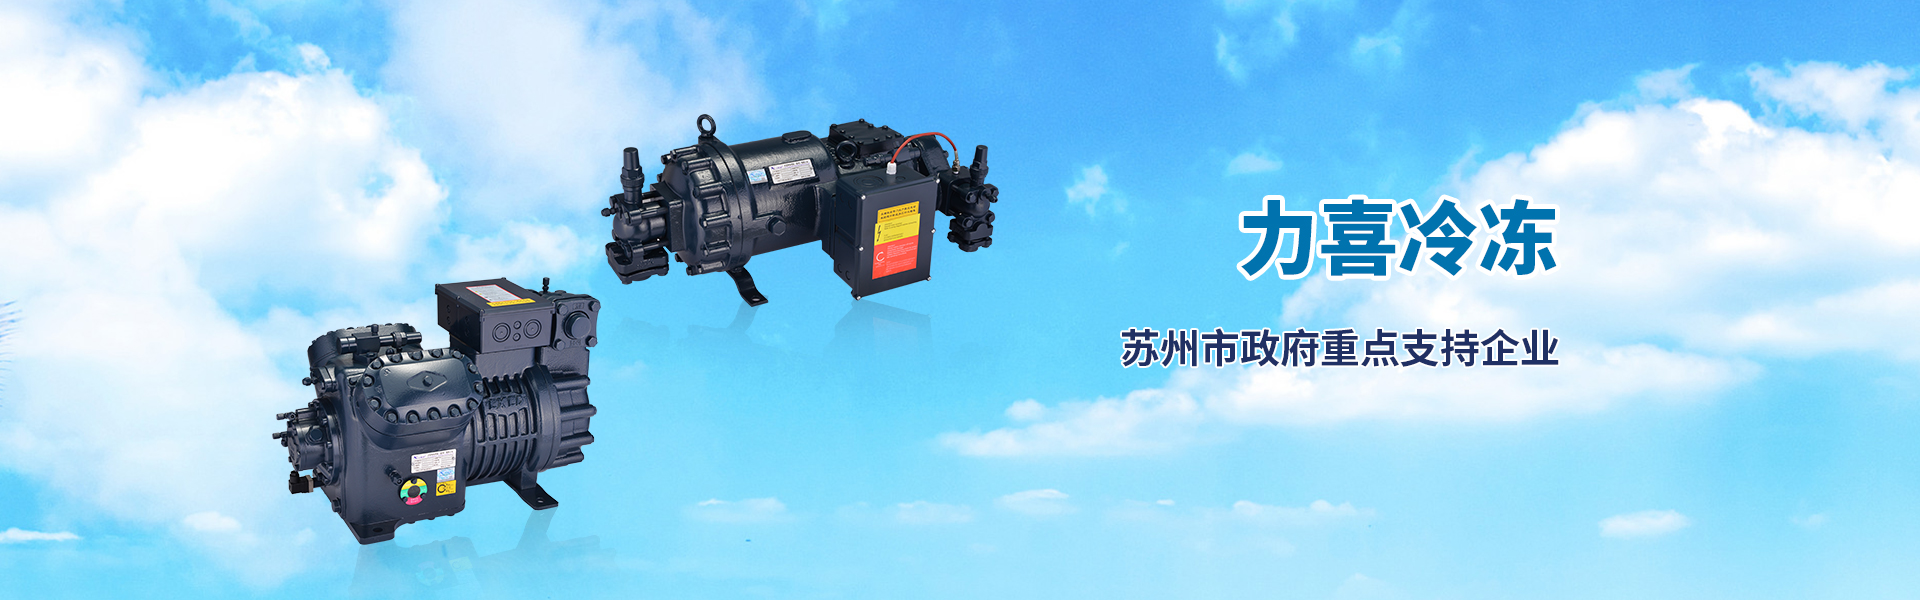 bwin·必赢(中国)唯一官方网站_产品6257